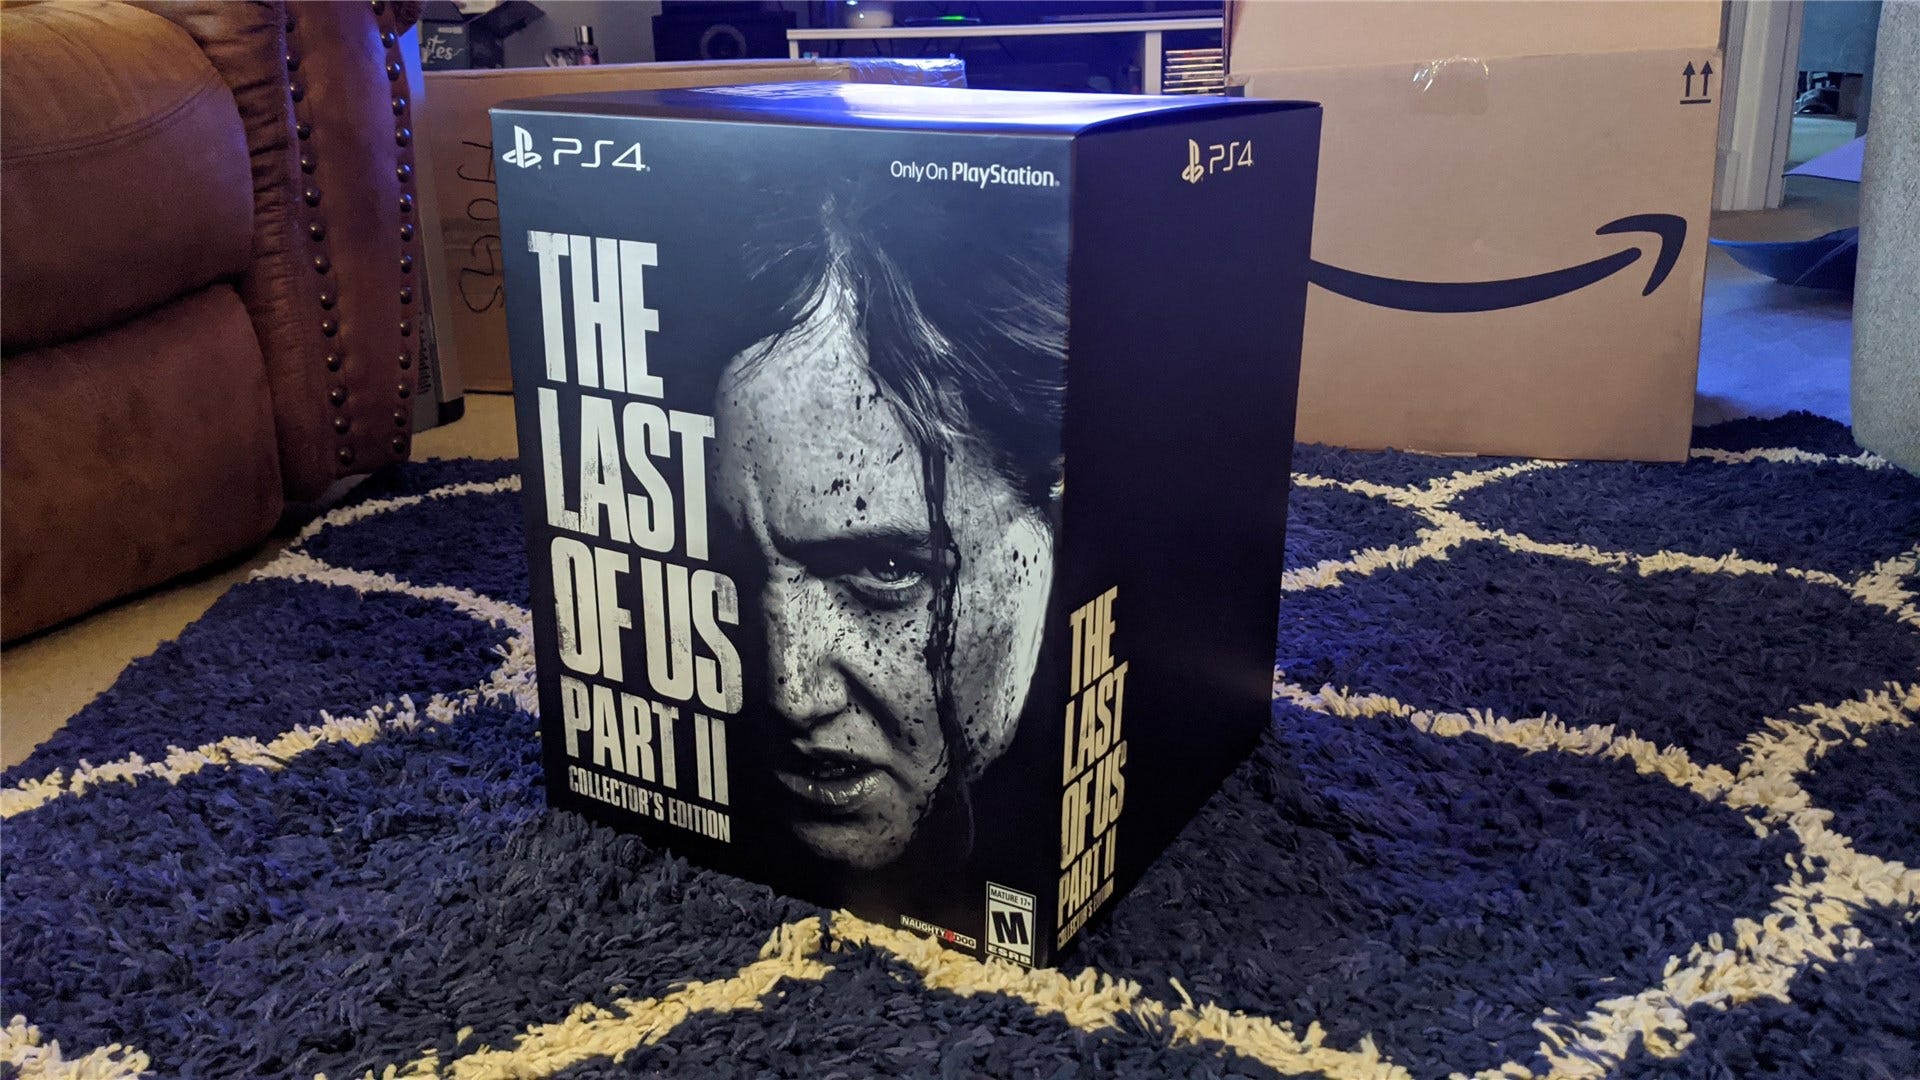 [Gallery] Đây là tất cả mọi thứ trong phiên bản của nhà sưu tập phần II của The Last of Us